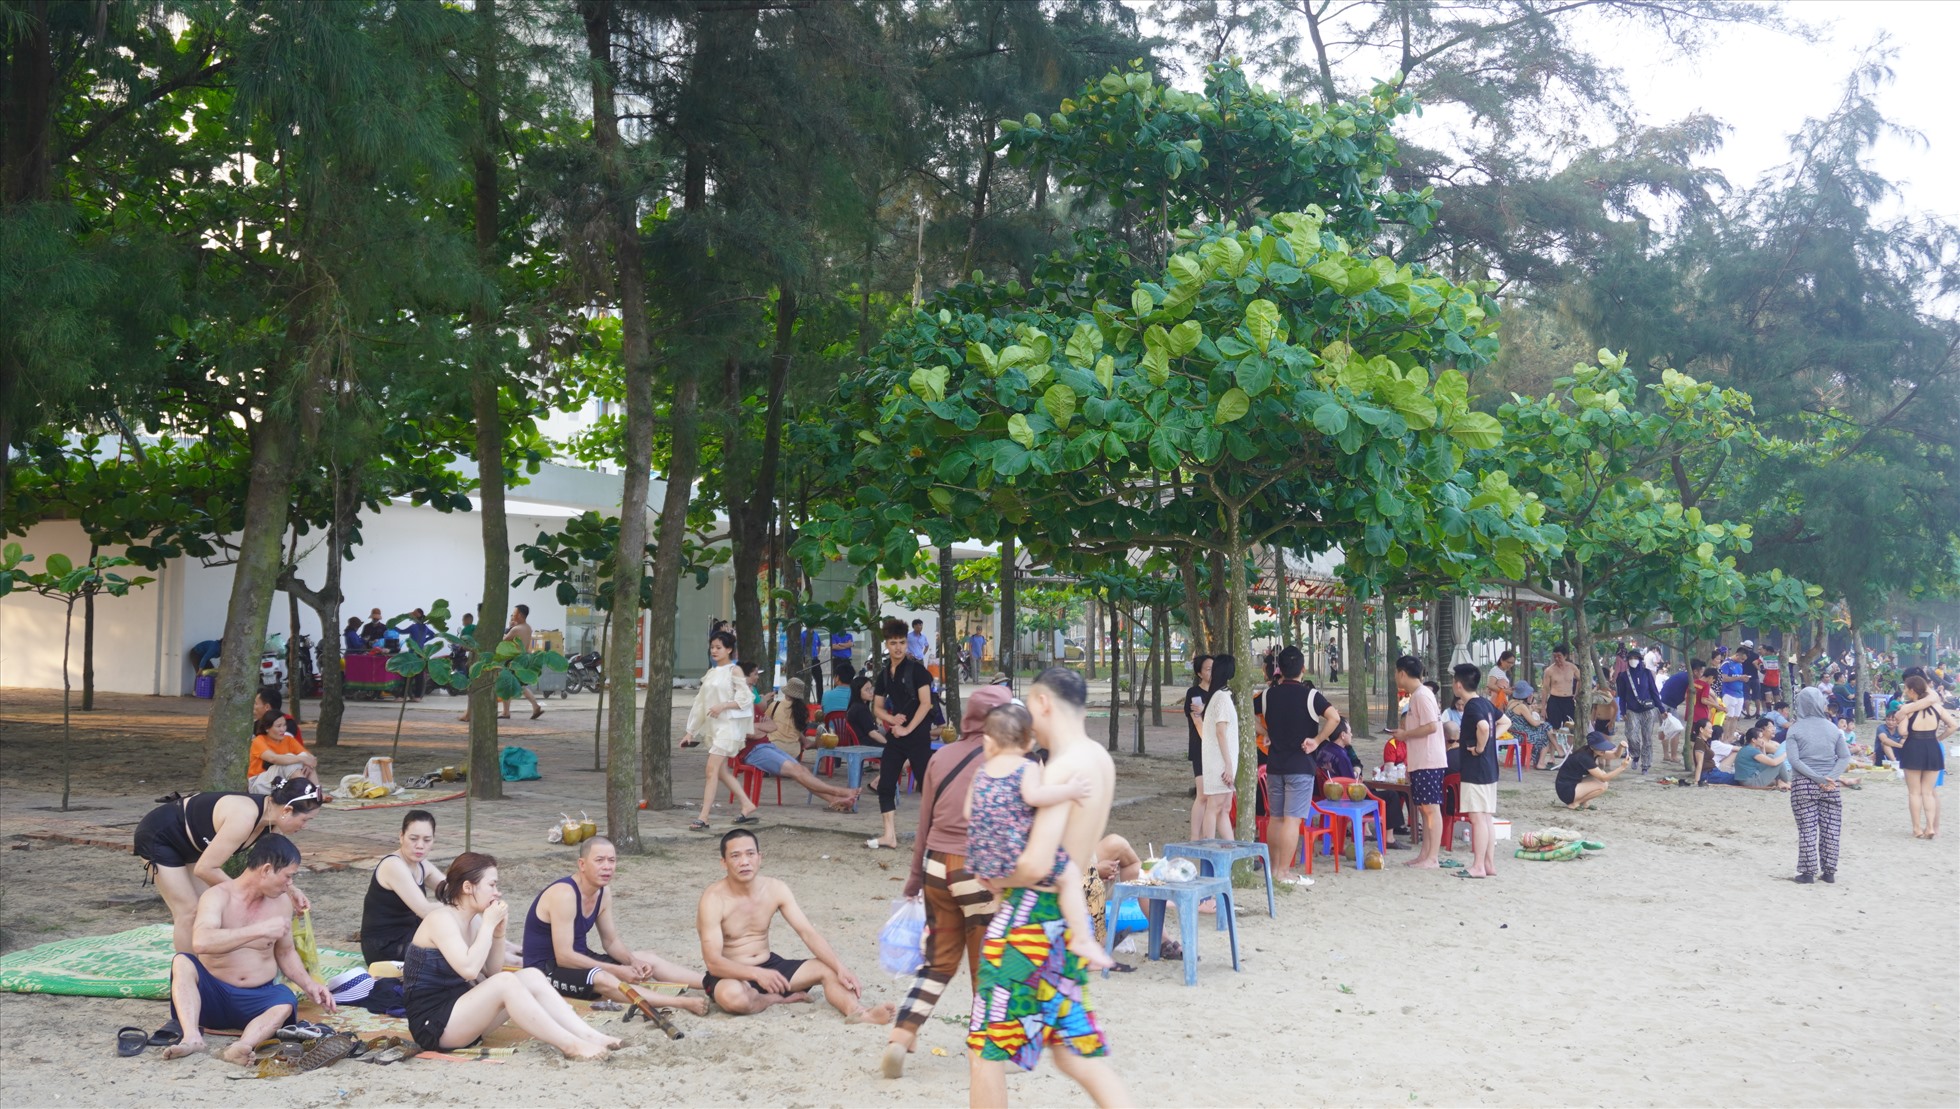 Sau quãng thời gian tắm biển mệt, nhiều người chọn cách ngồi hóng gió, thư thái tại bãi biển. Ảnh: Quách Du